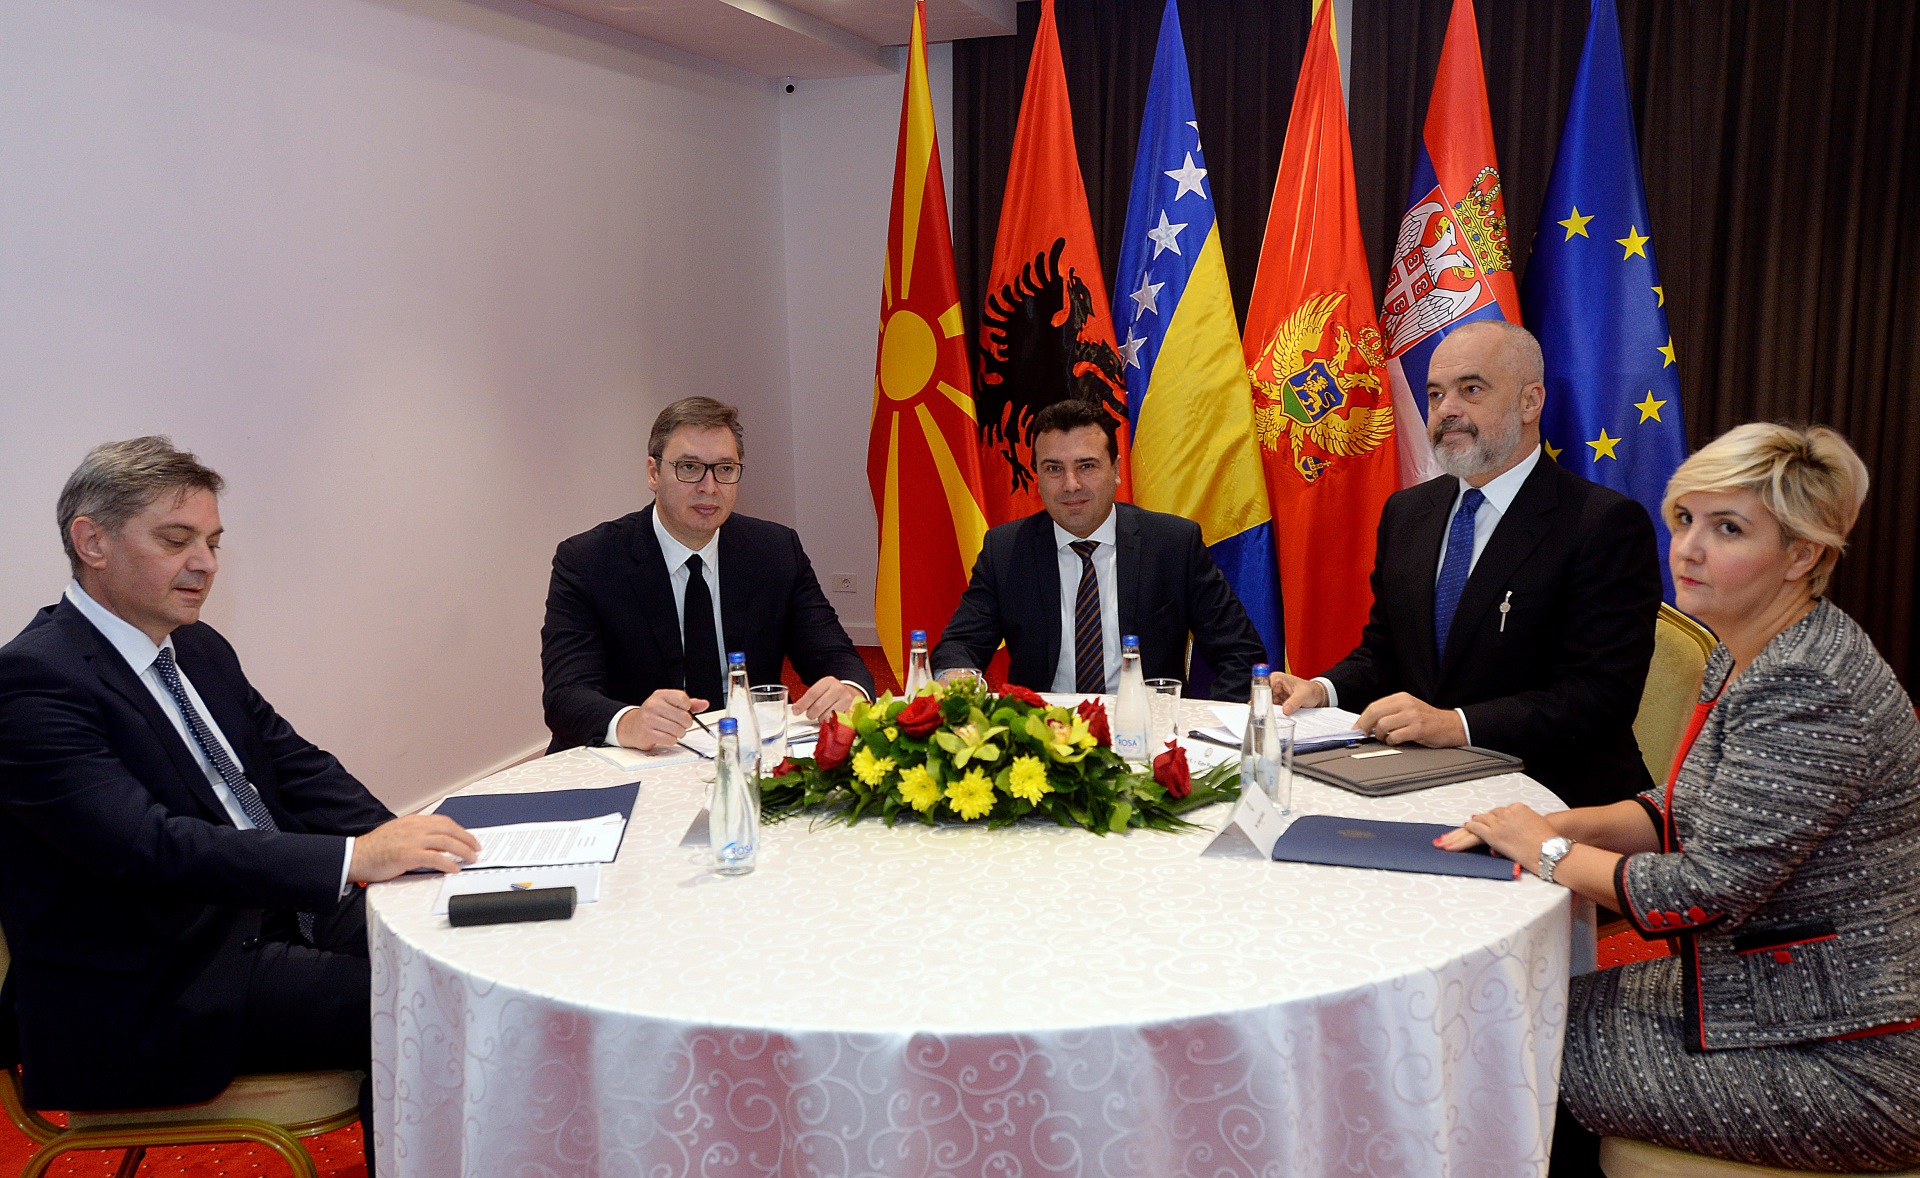 Predsednik Srbije Aleksandar Vucic dobri sastanci i odluke u Ohridu, ocekujem napade